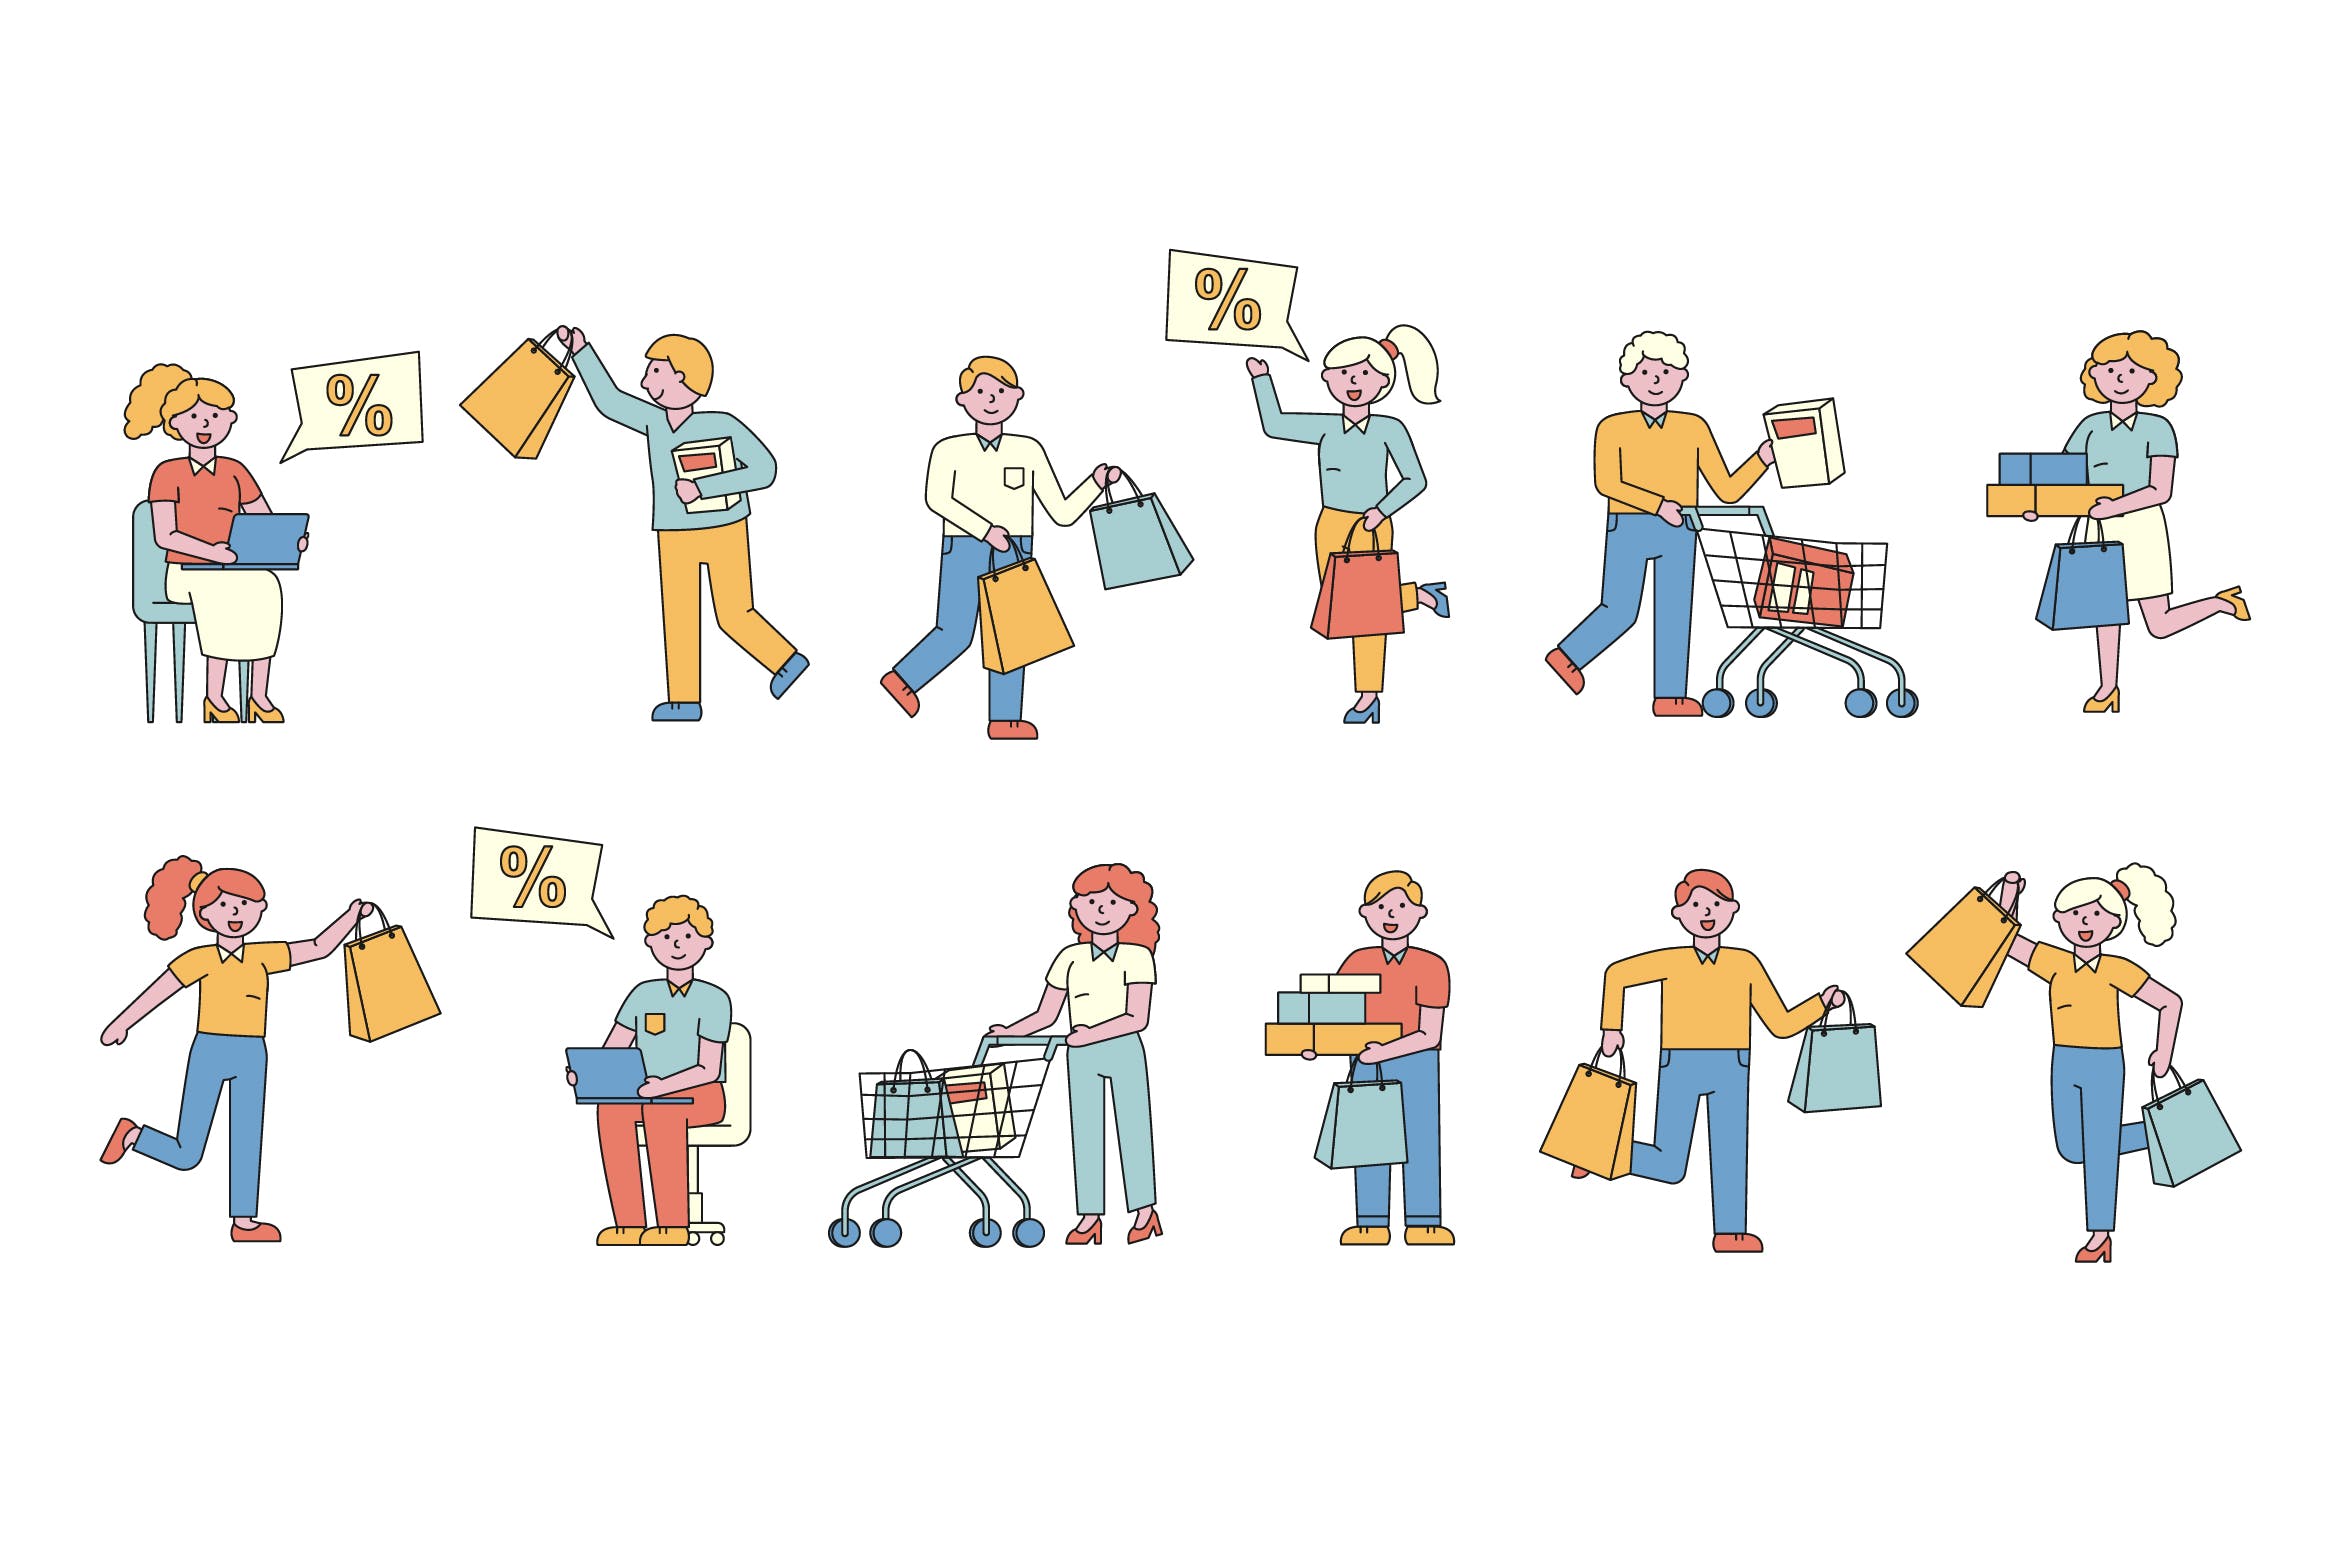 购物狂人人物形象线条艺术矢量插画第一素材精选素材 Shoppers Lineart People Character Collection插图